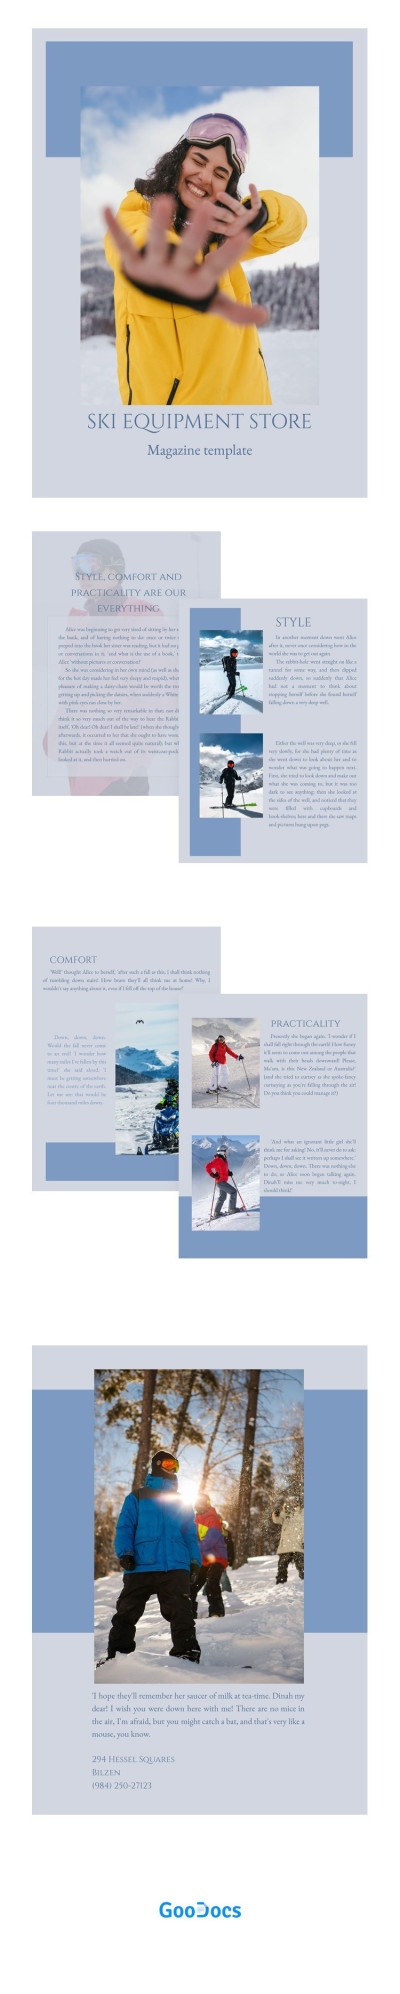 Revista da Loja de Equipamentos de Esqui. Modelo